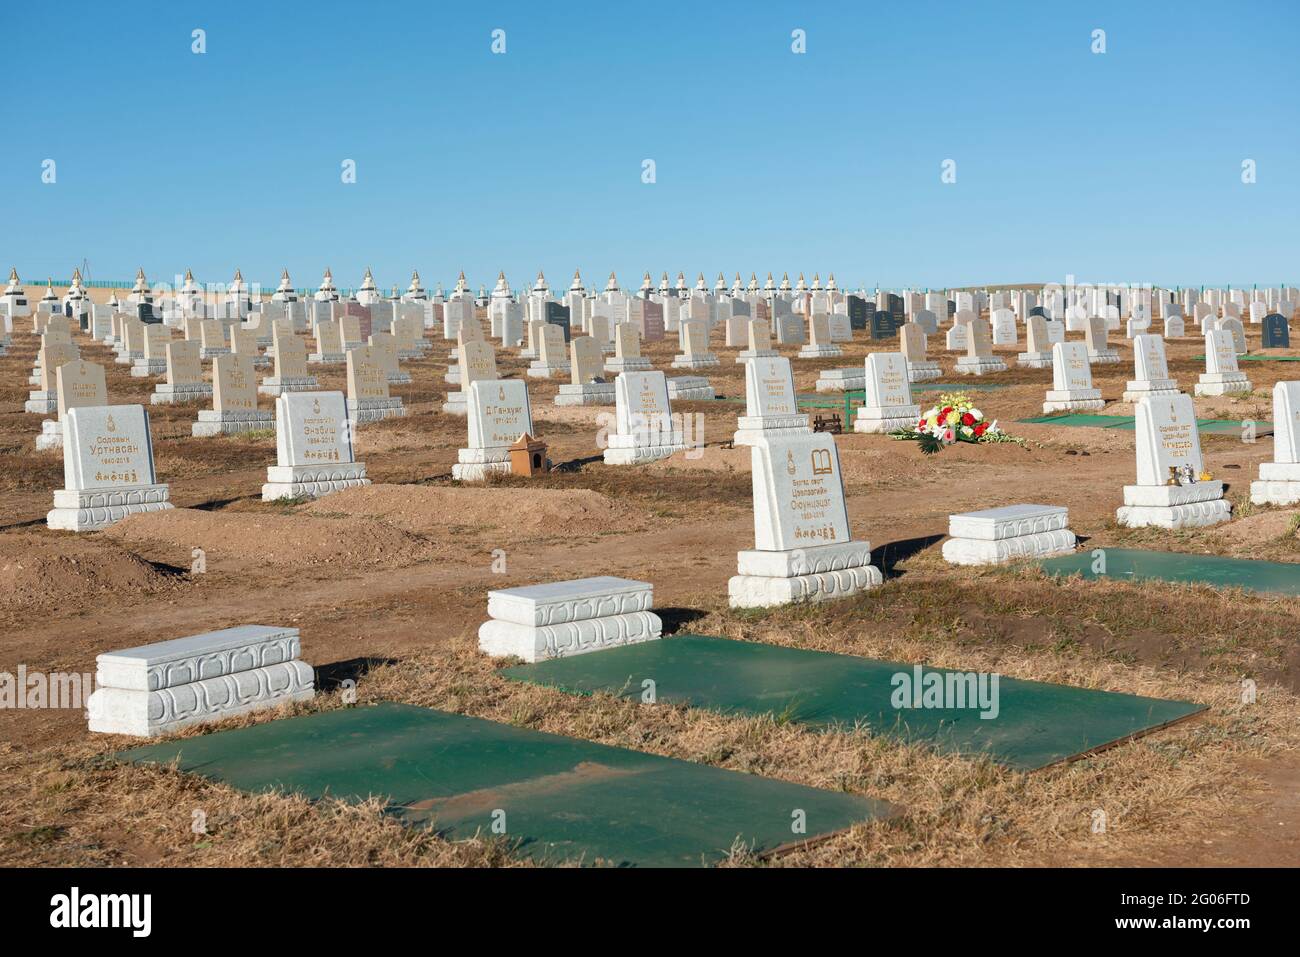 Cementerios Este y Oeste, Mongolia, el trabajo fue ejecutado por el “New Mind Group LLC”. Estos se pueden ver mientras se viaja en el Ferrocarril Transiberiano. Foto de stock